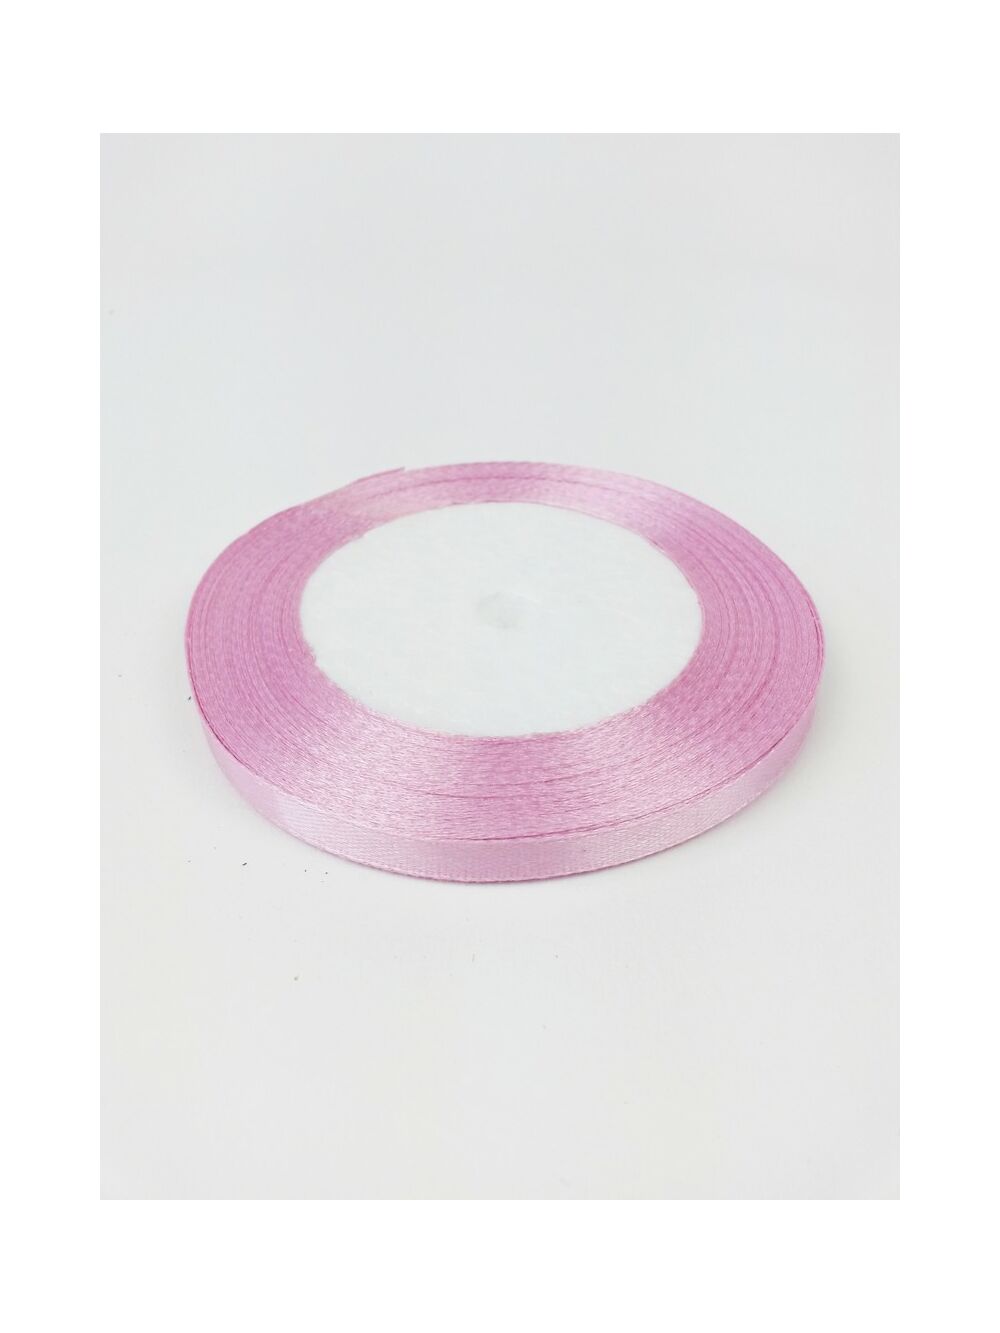 Kép 2/2 - 6 mm-es szatén szalag - Fáradt rózsaszín